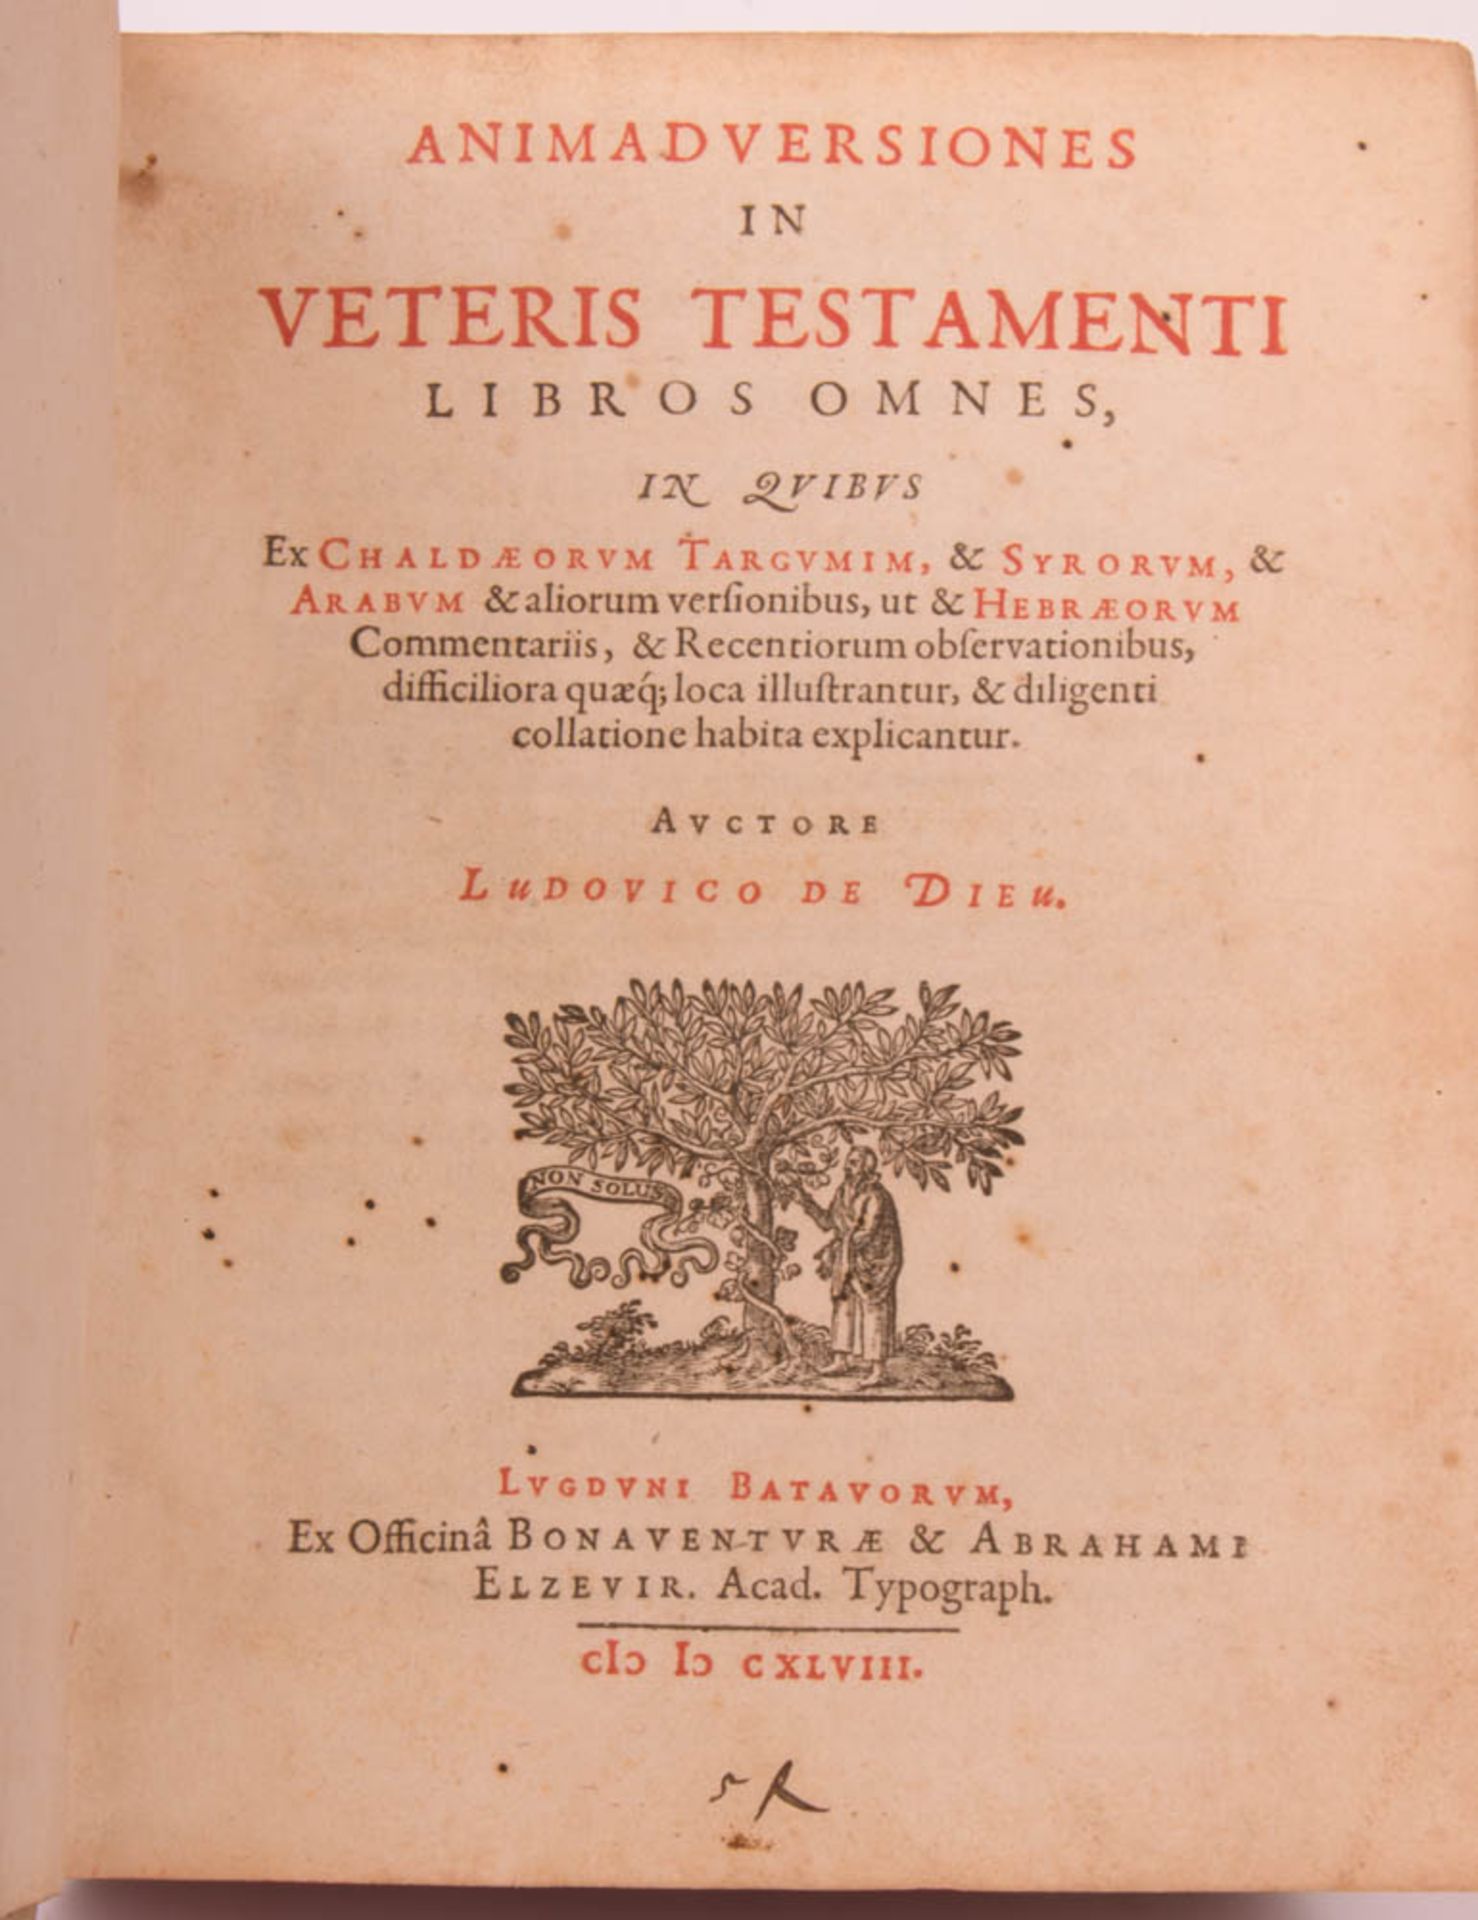 Ludovicus de Dieu, Animad Versiones in Veteris Testamenti, Lugundum Batavorum, 1648.